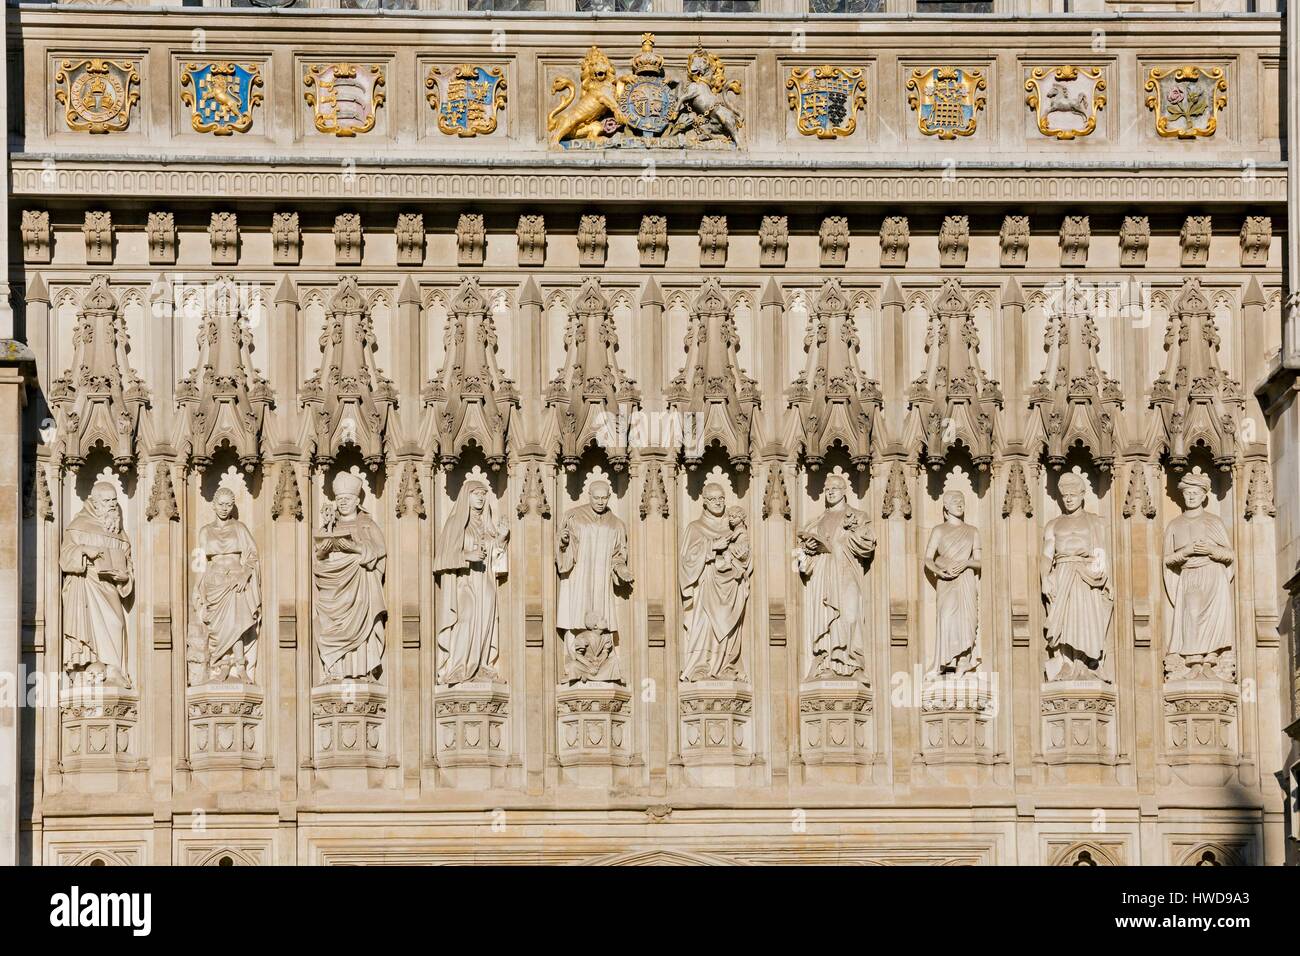 Vereinigtes Königreich, London, Westminster Bezirk, Westminster Abbey, gotische Kirche und Ort der Krönung, Weltkulturerbe der UNESCO, Reliefs Fassade Stockfoto